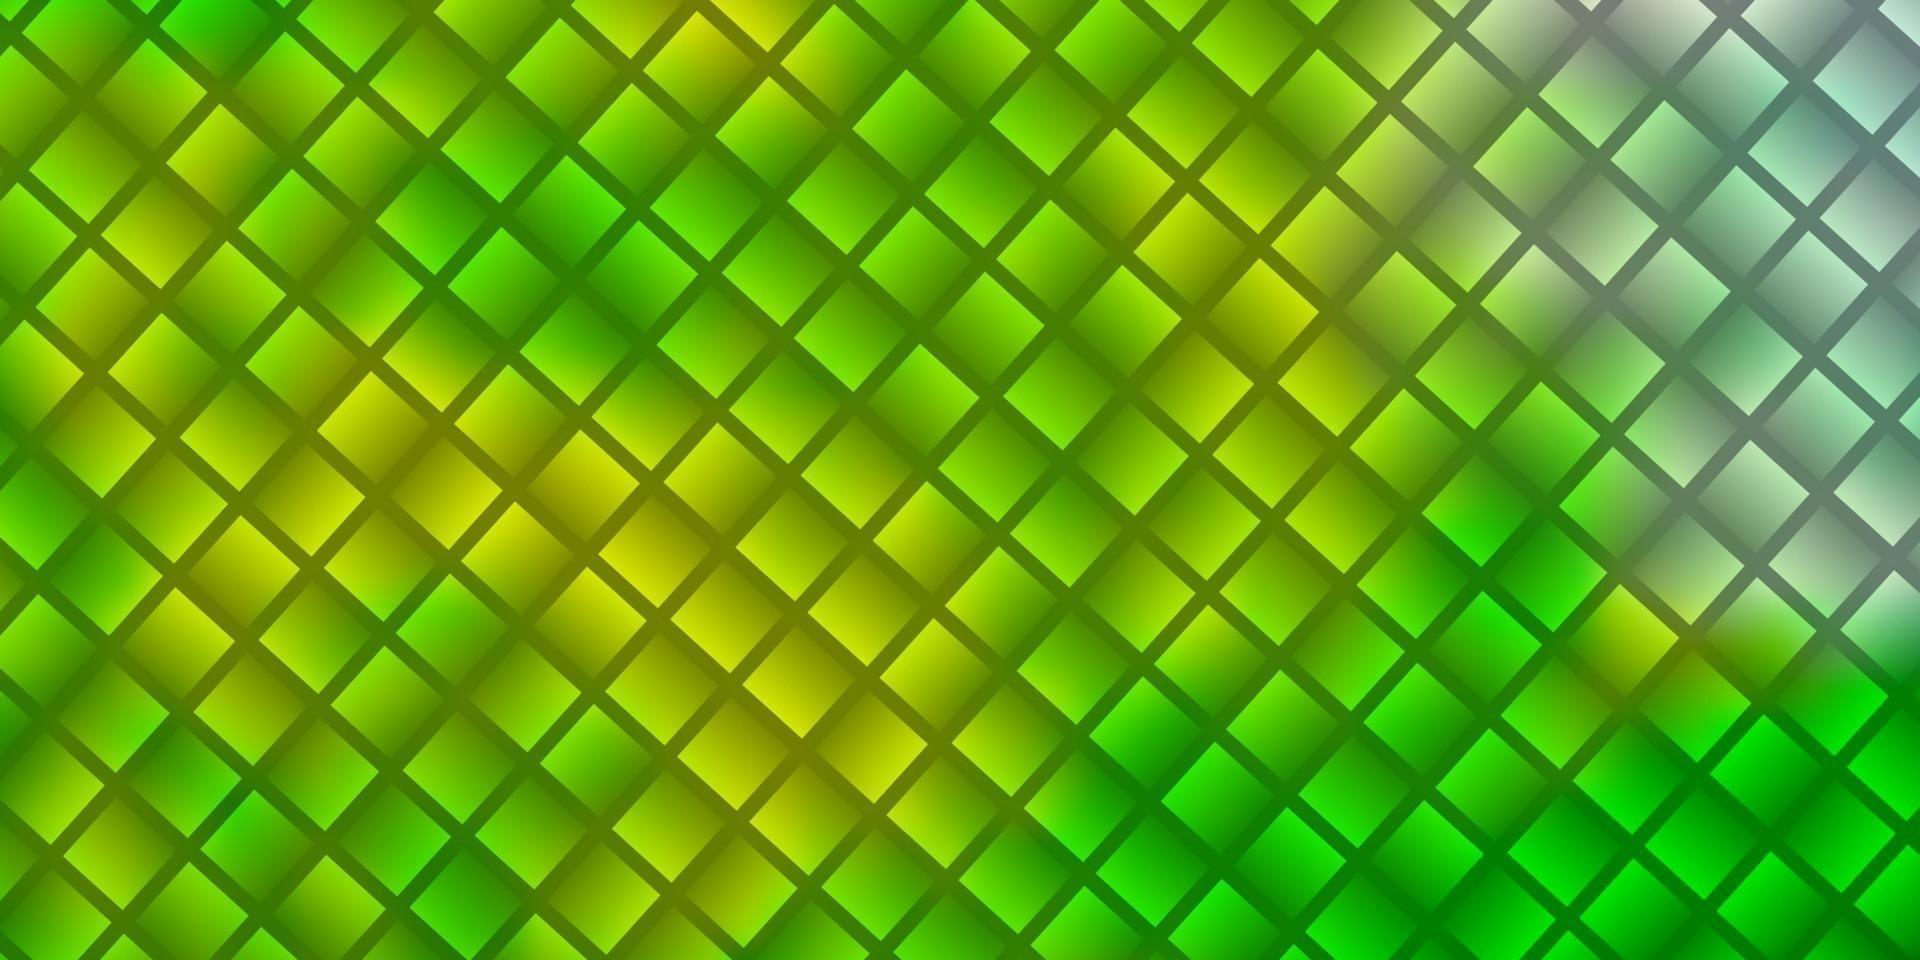 texture vecteur vert clair, jaune dans un style rectangulaire.